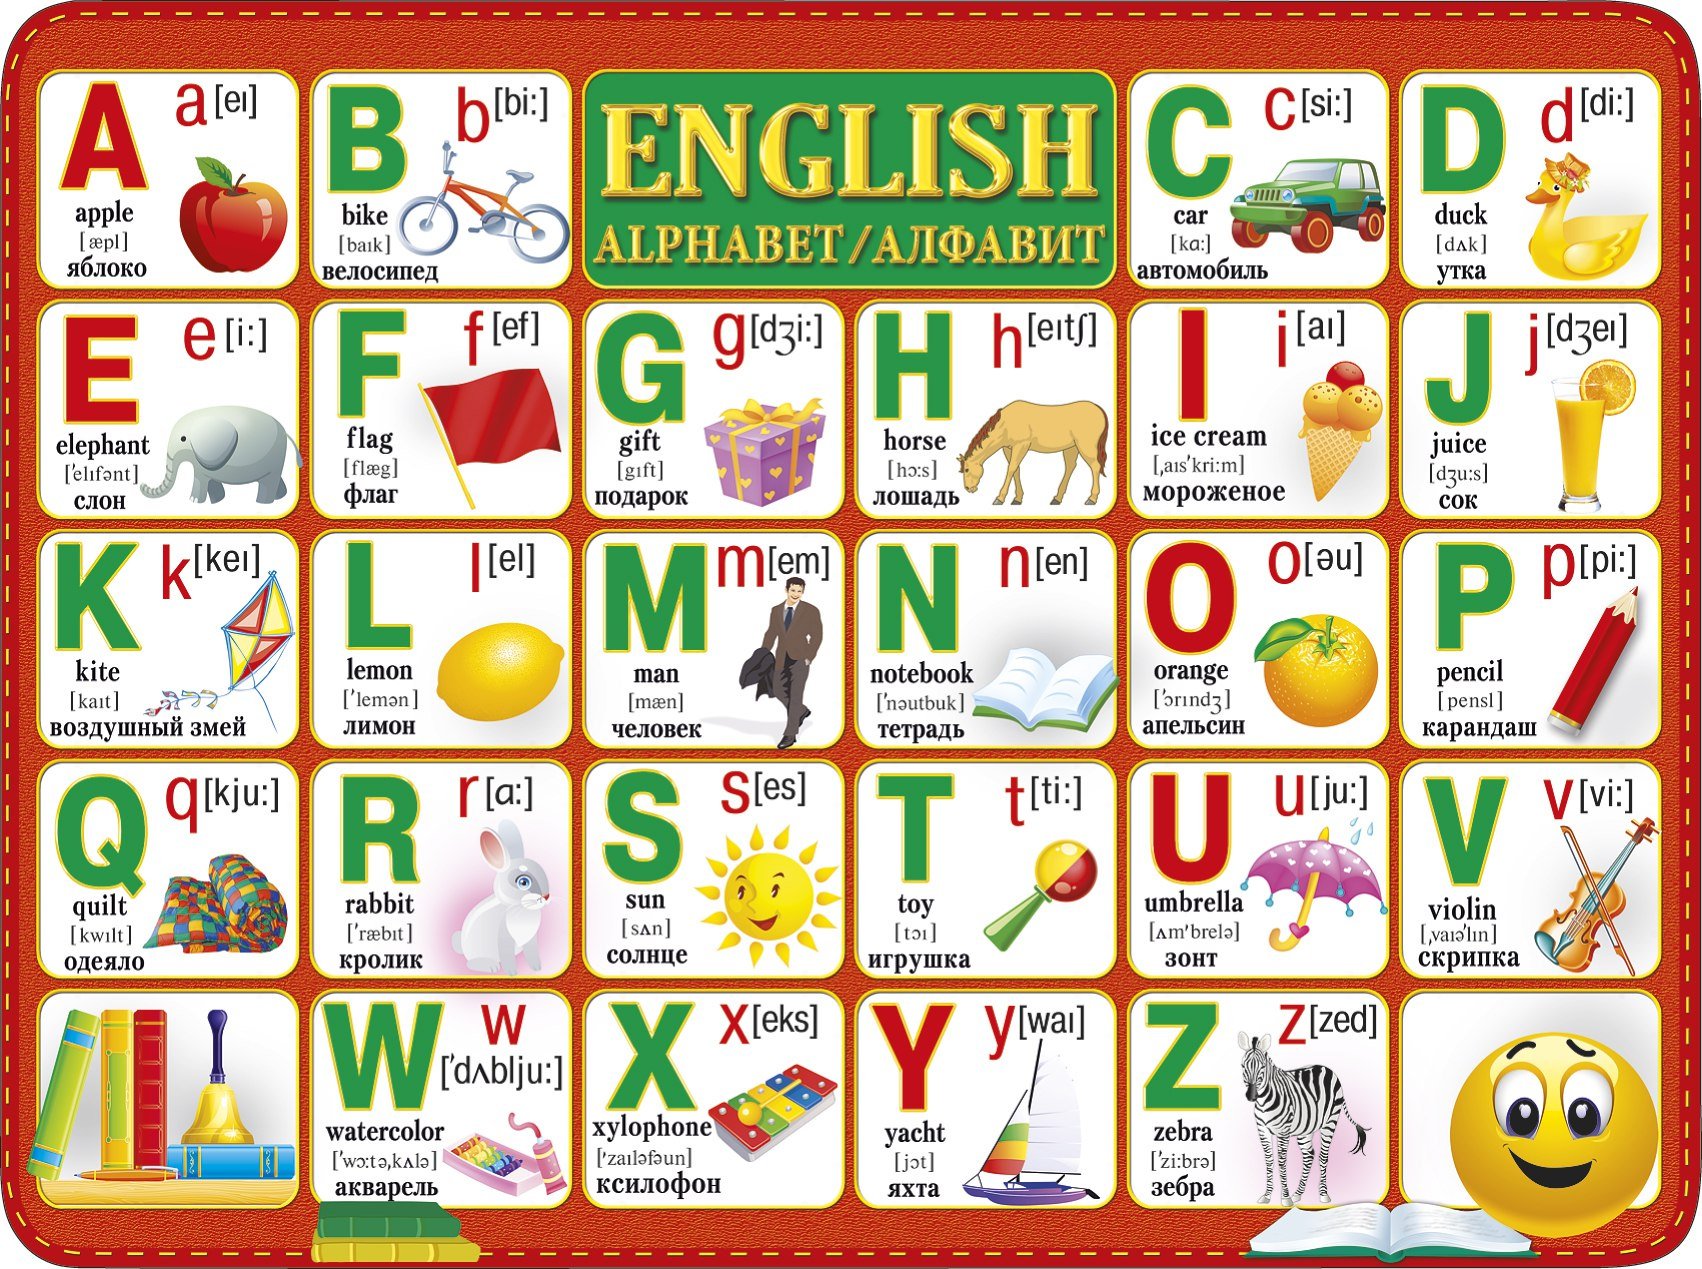 Английские слова й. Английский алфавит. Английская Азбука для детей. Английский алфавит в картинках. Алфавит английского языка для детей.